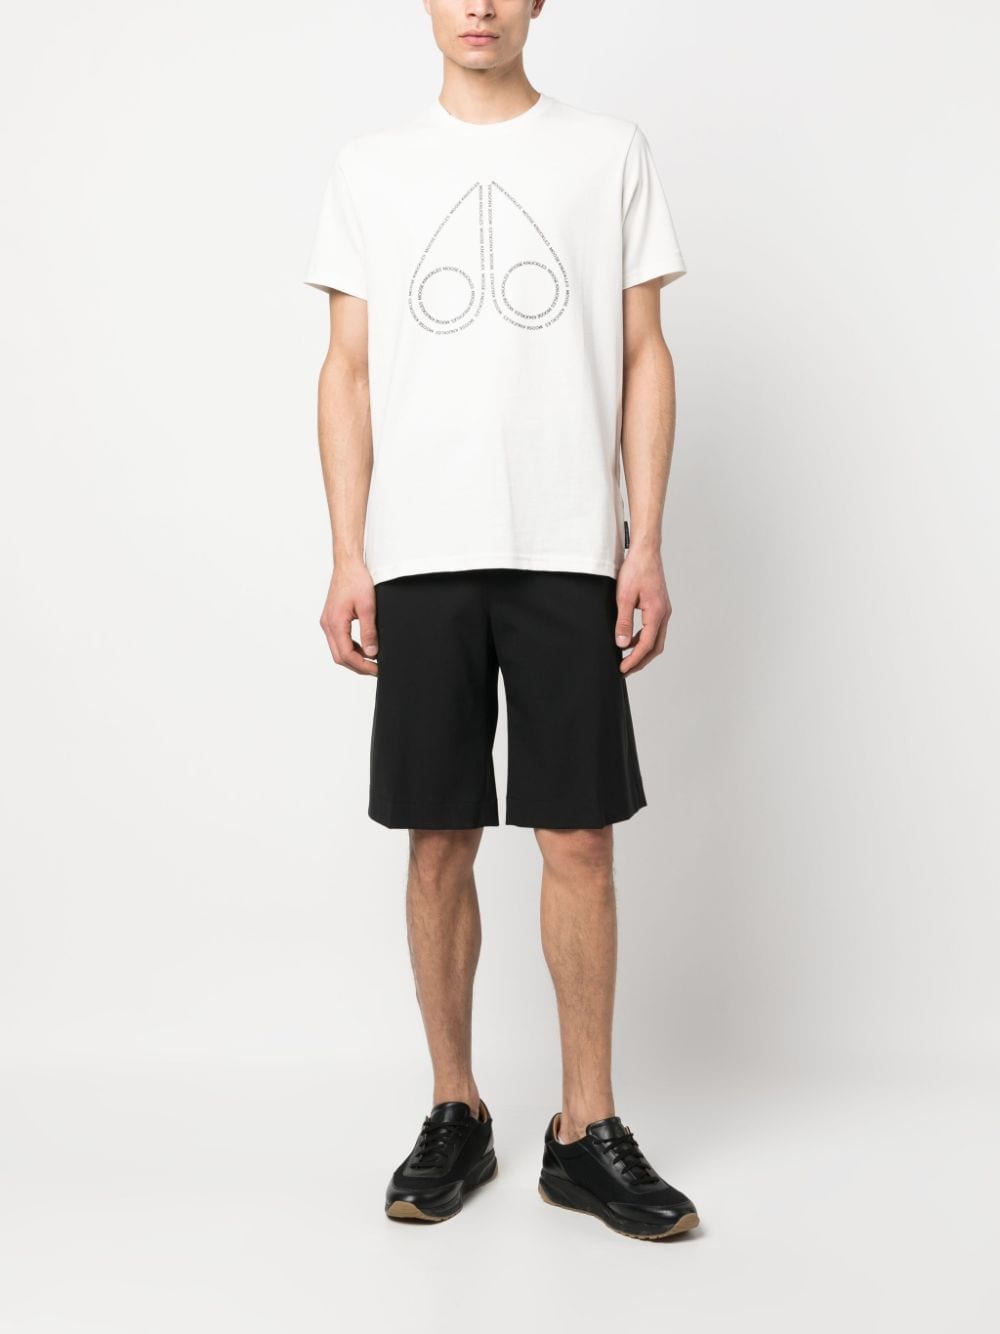 Moose Knuckles T-shirt met logoprint - Wit